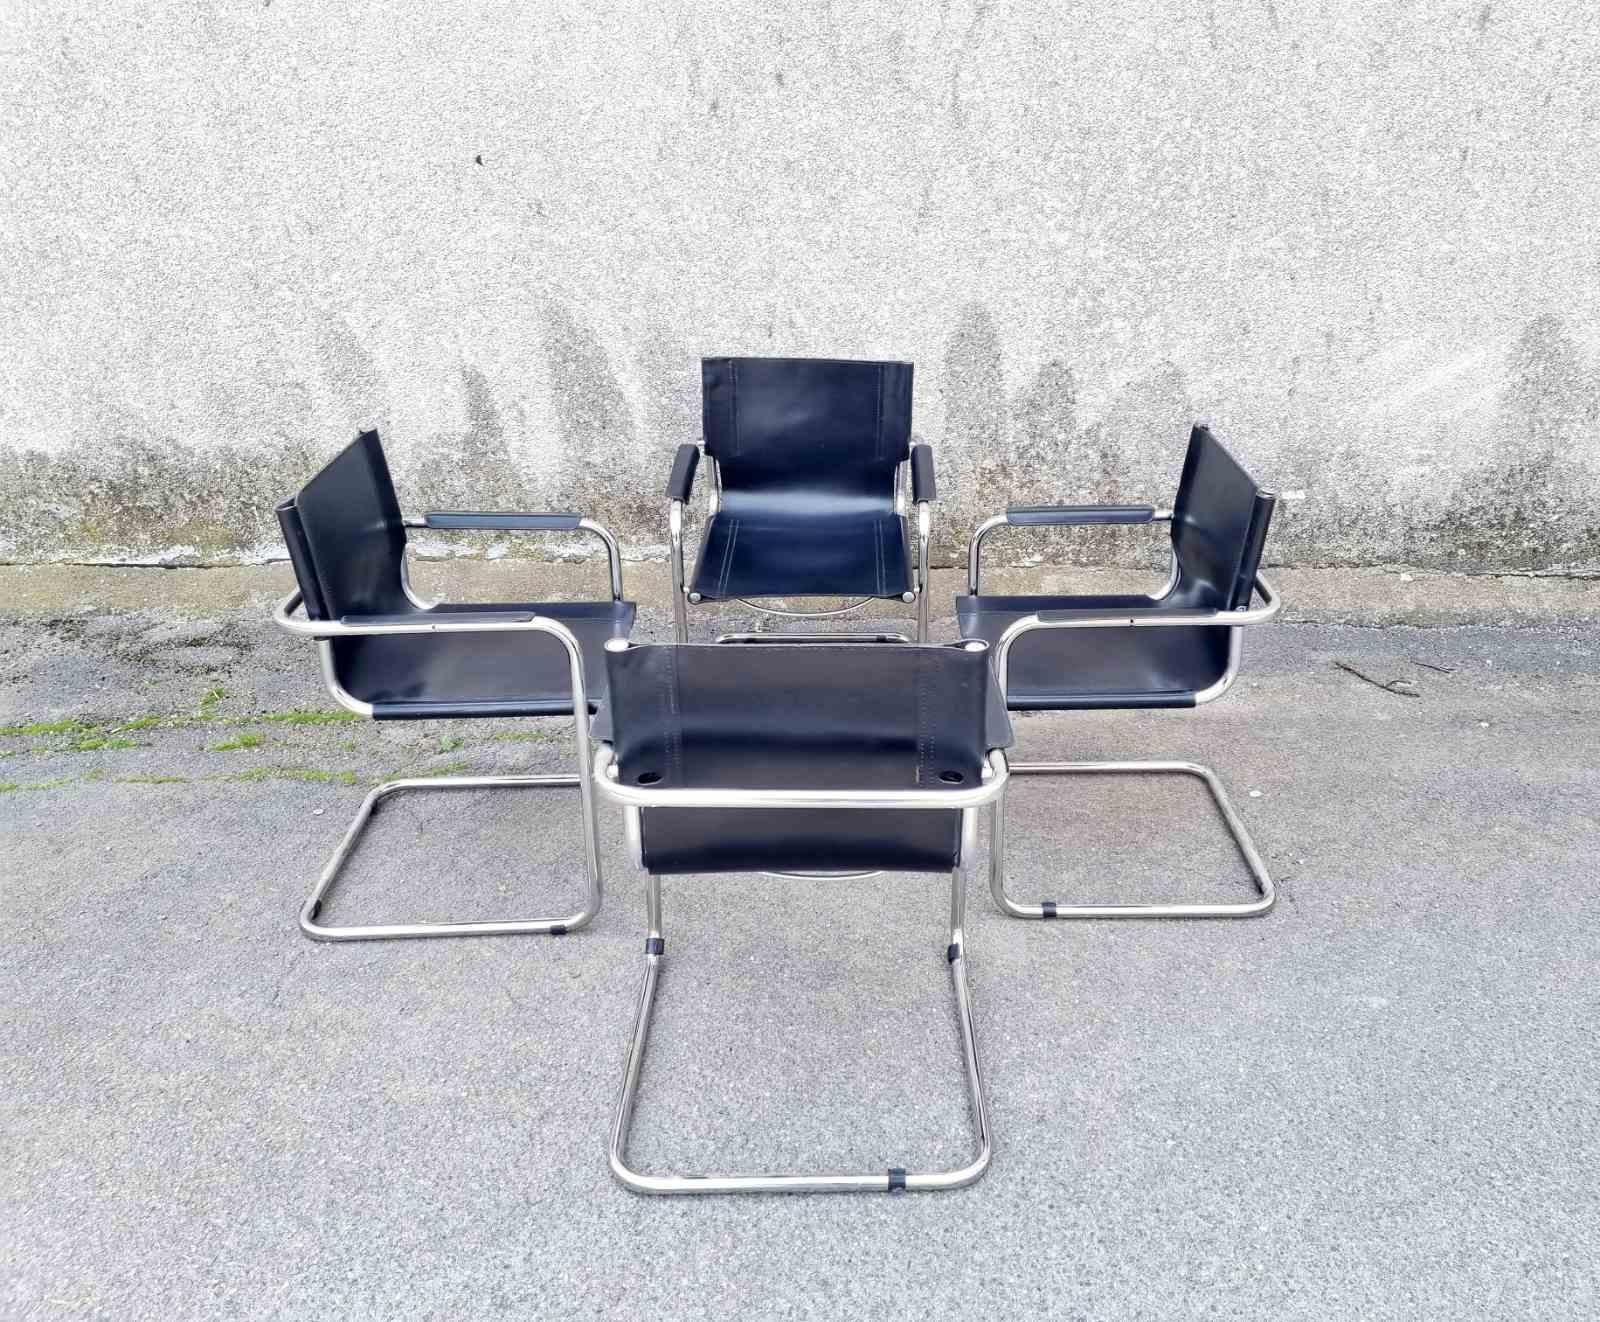 Ensemble de 4 chaises de salle à manger Bauhaus en porte-à-faux, conçues par Mart Stam et produites par Matteo Grassi dans les années 1970. 
Cuir noir d'origine en état presque parfait

Modèle : MG5 Chaise visiteur
Matière : cuir noir et métal